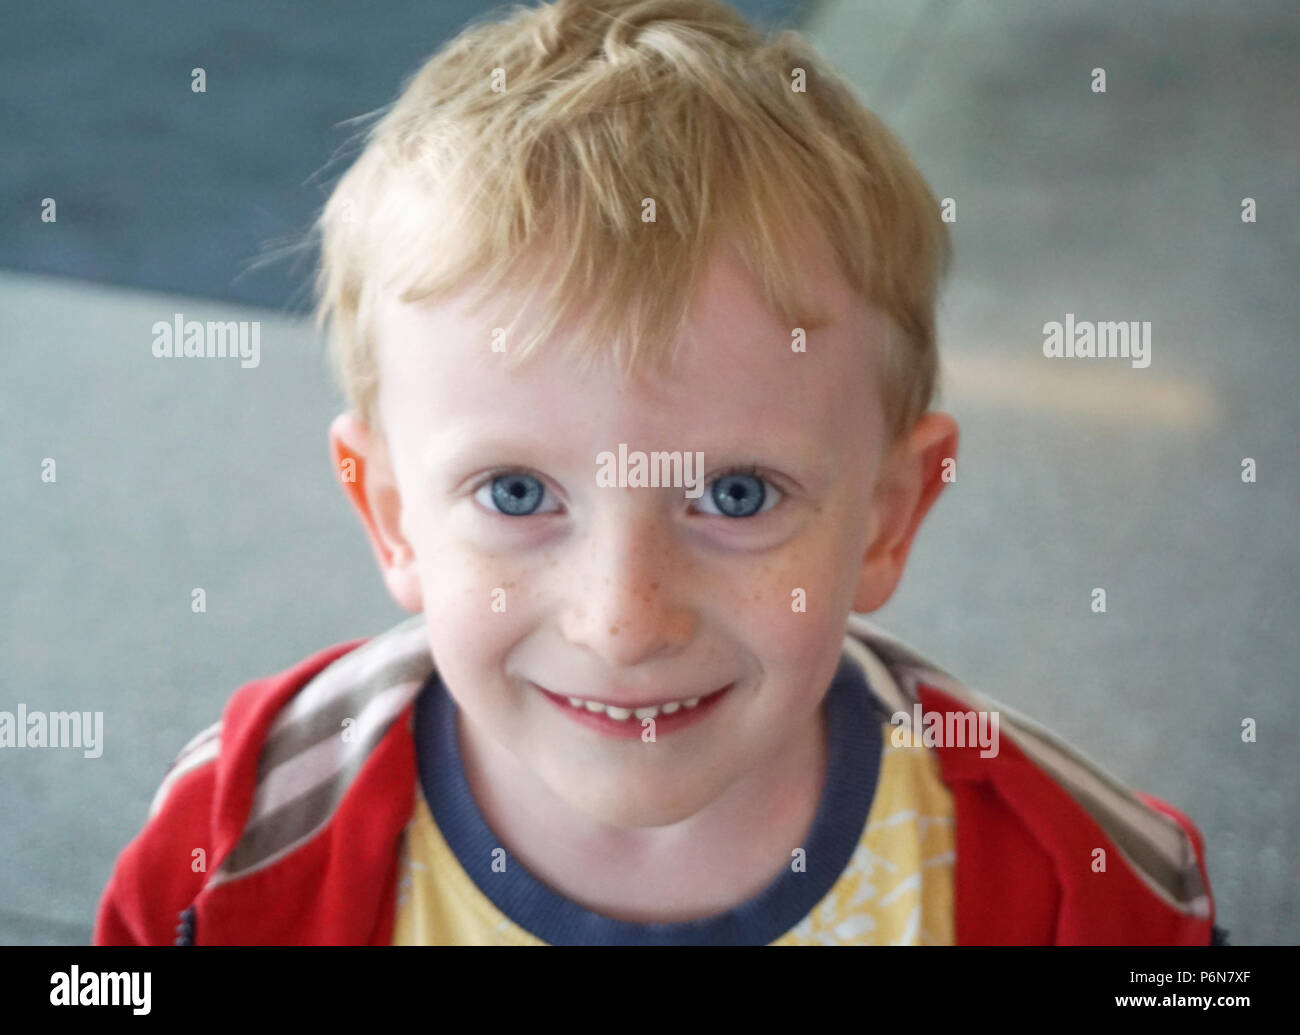 Close up portrait of Boy. Mignon et joyeux, souriant quatre ans, avec des cheveux blonds et de magnifiques yeux bleu Banque D'Images